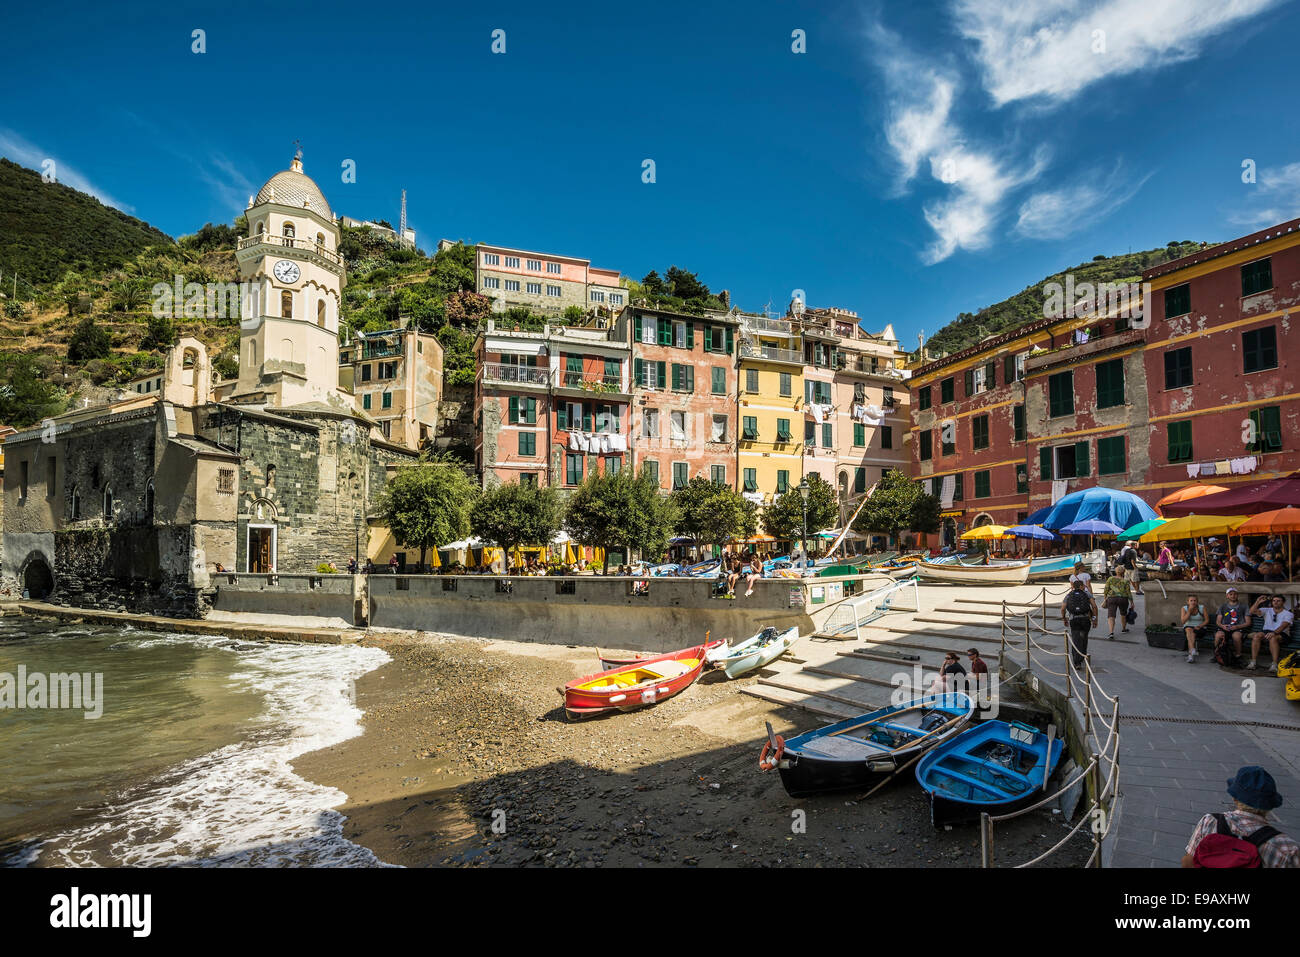 Porto, villaggio con case colorate, Vernazza, Cinque Terre Provincia della Spezia, Liguria, Italia Foto Stock